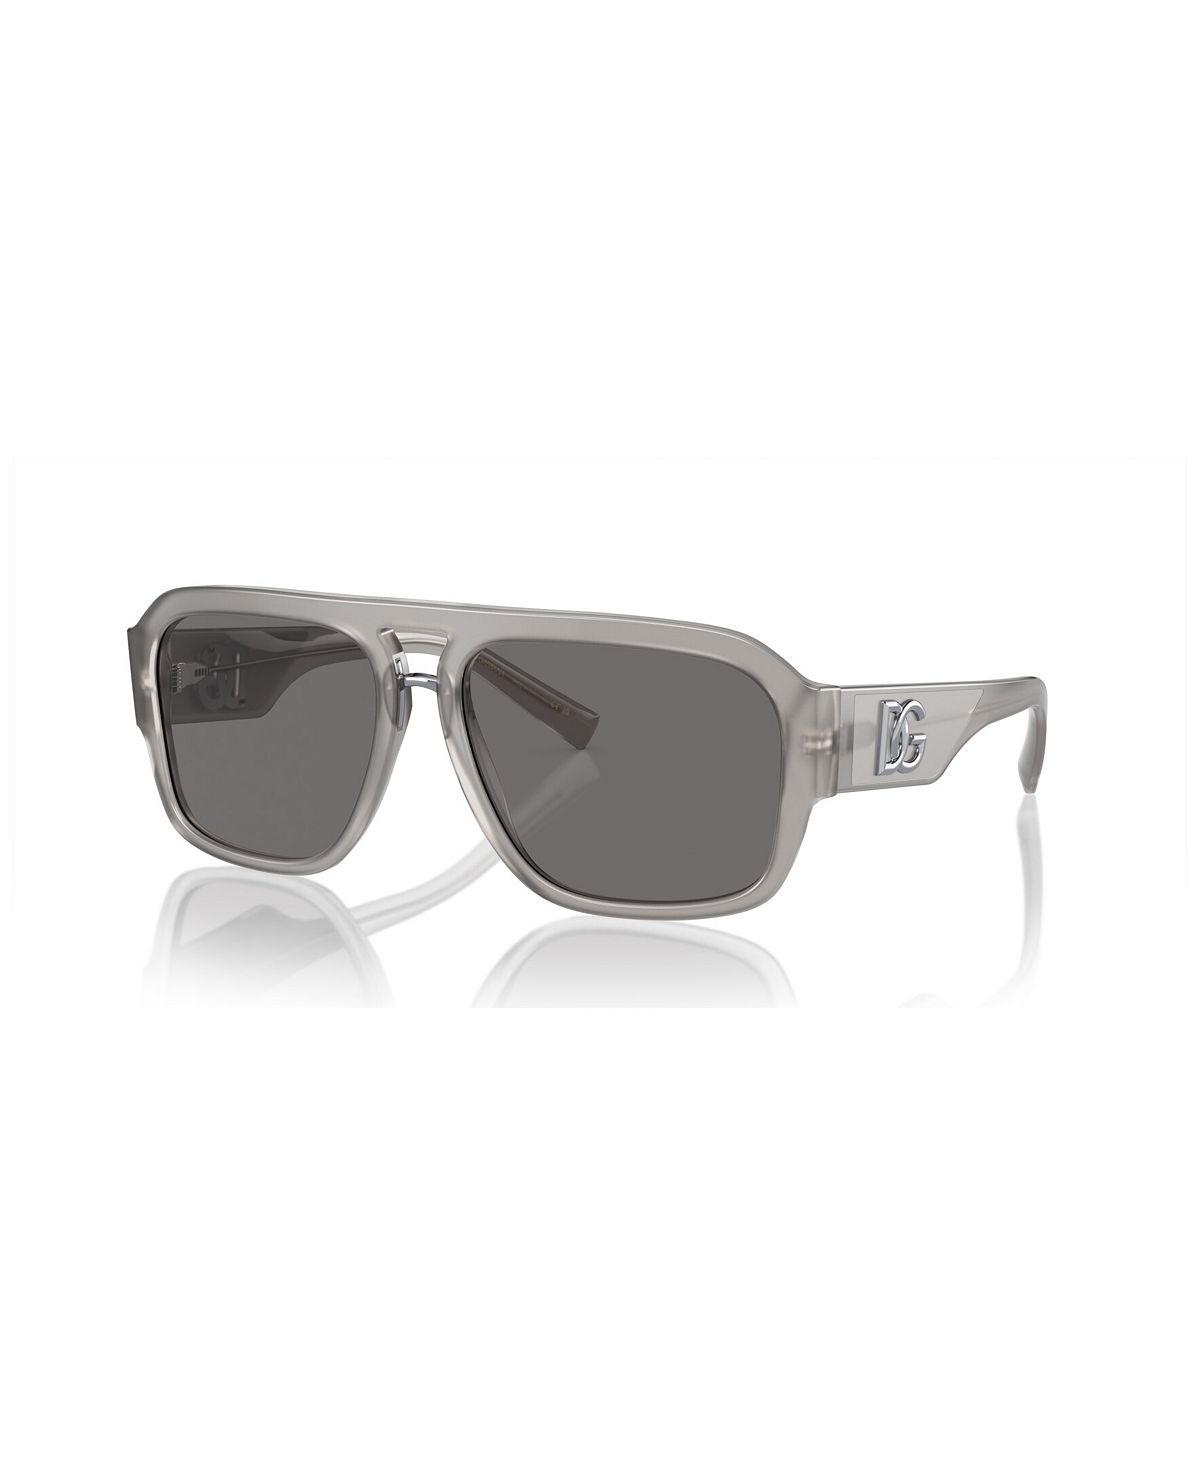 Мужские поляризованные солнцезащитные очки, DG4403 58 Dolce&Gabbana